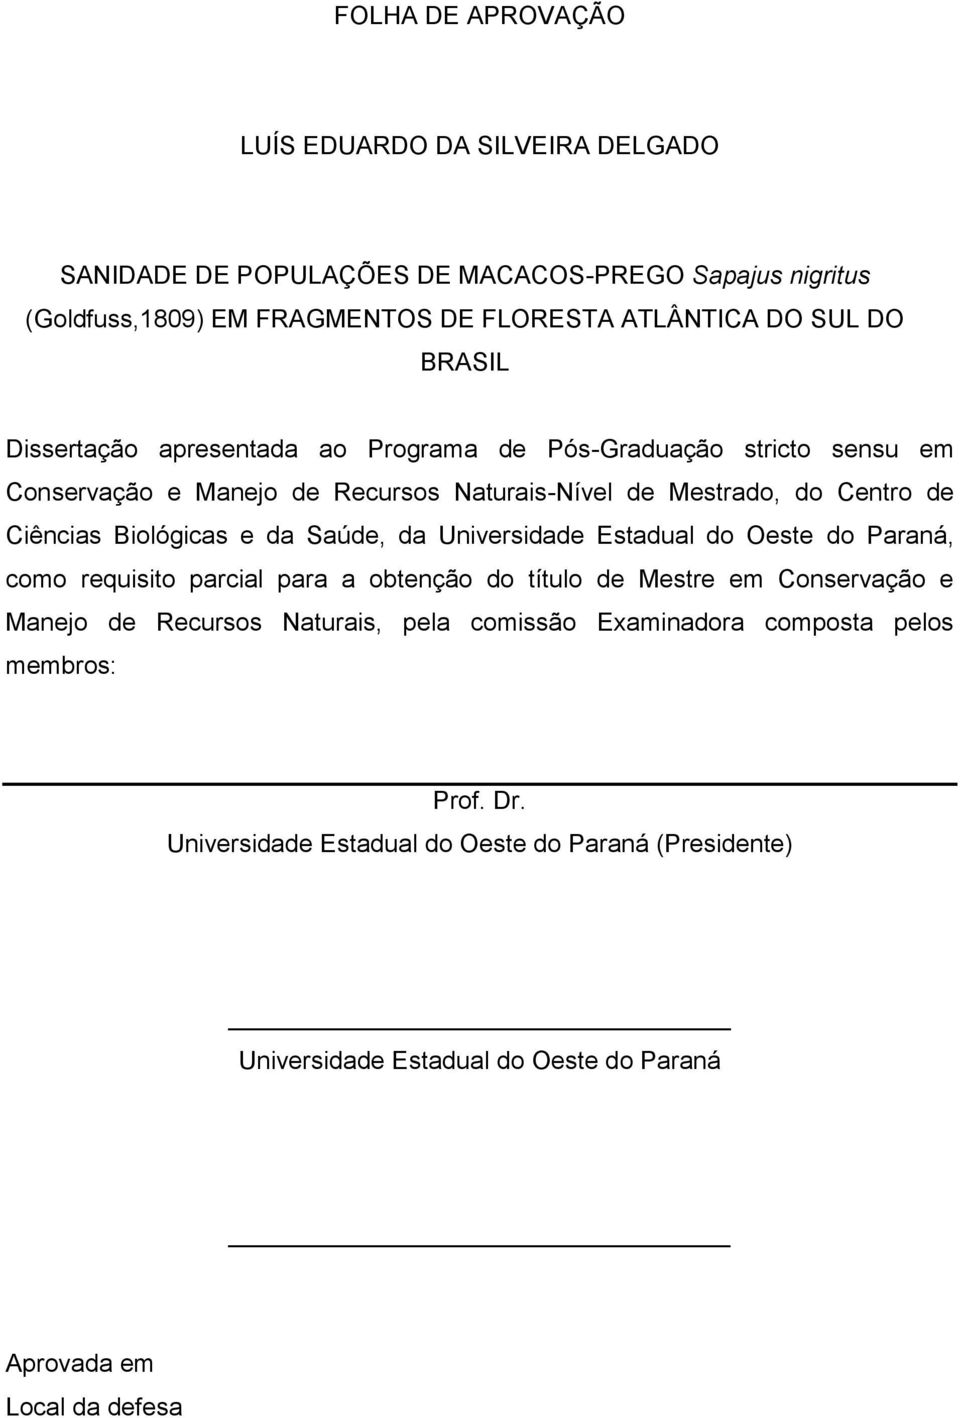 Biológicas e da Saúde, da Universidade Estadual do Oeste do Paraná, como requisito parcial para a obtenção do título de Mestre em Conservação e Manejo de Recursos